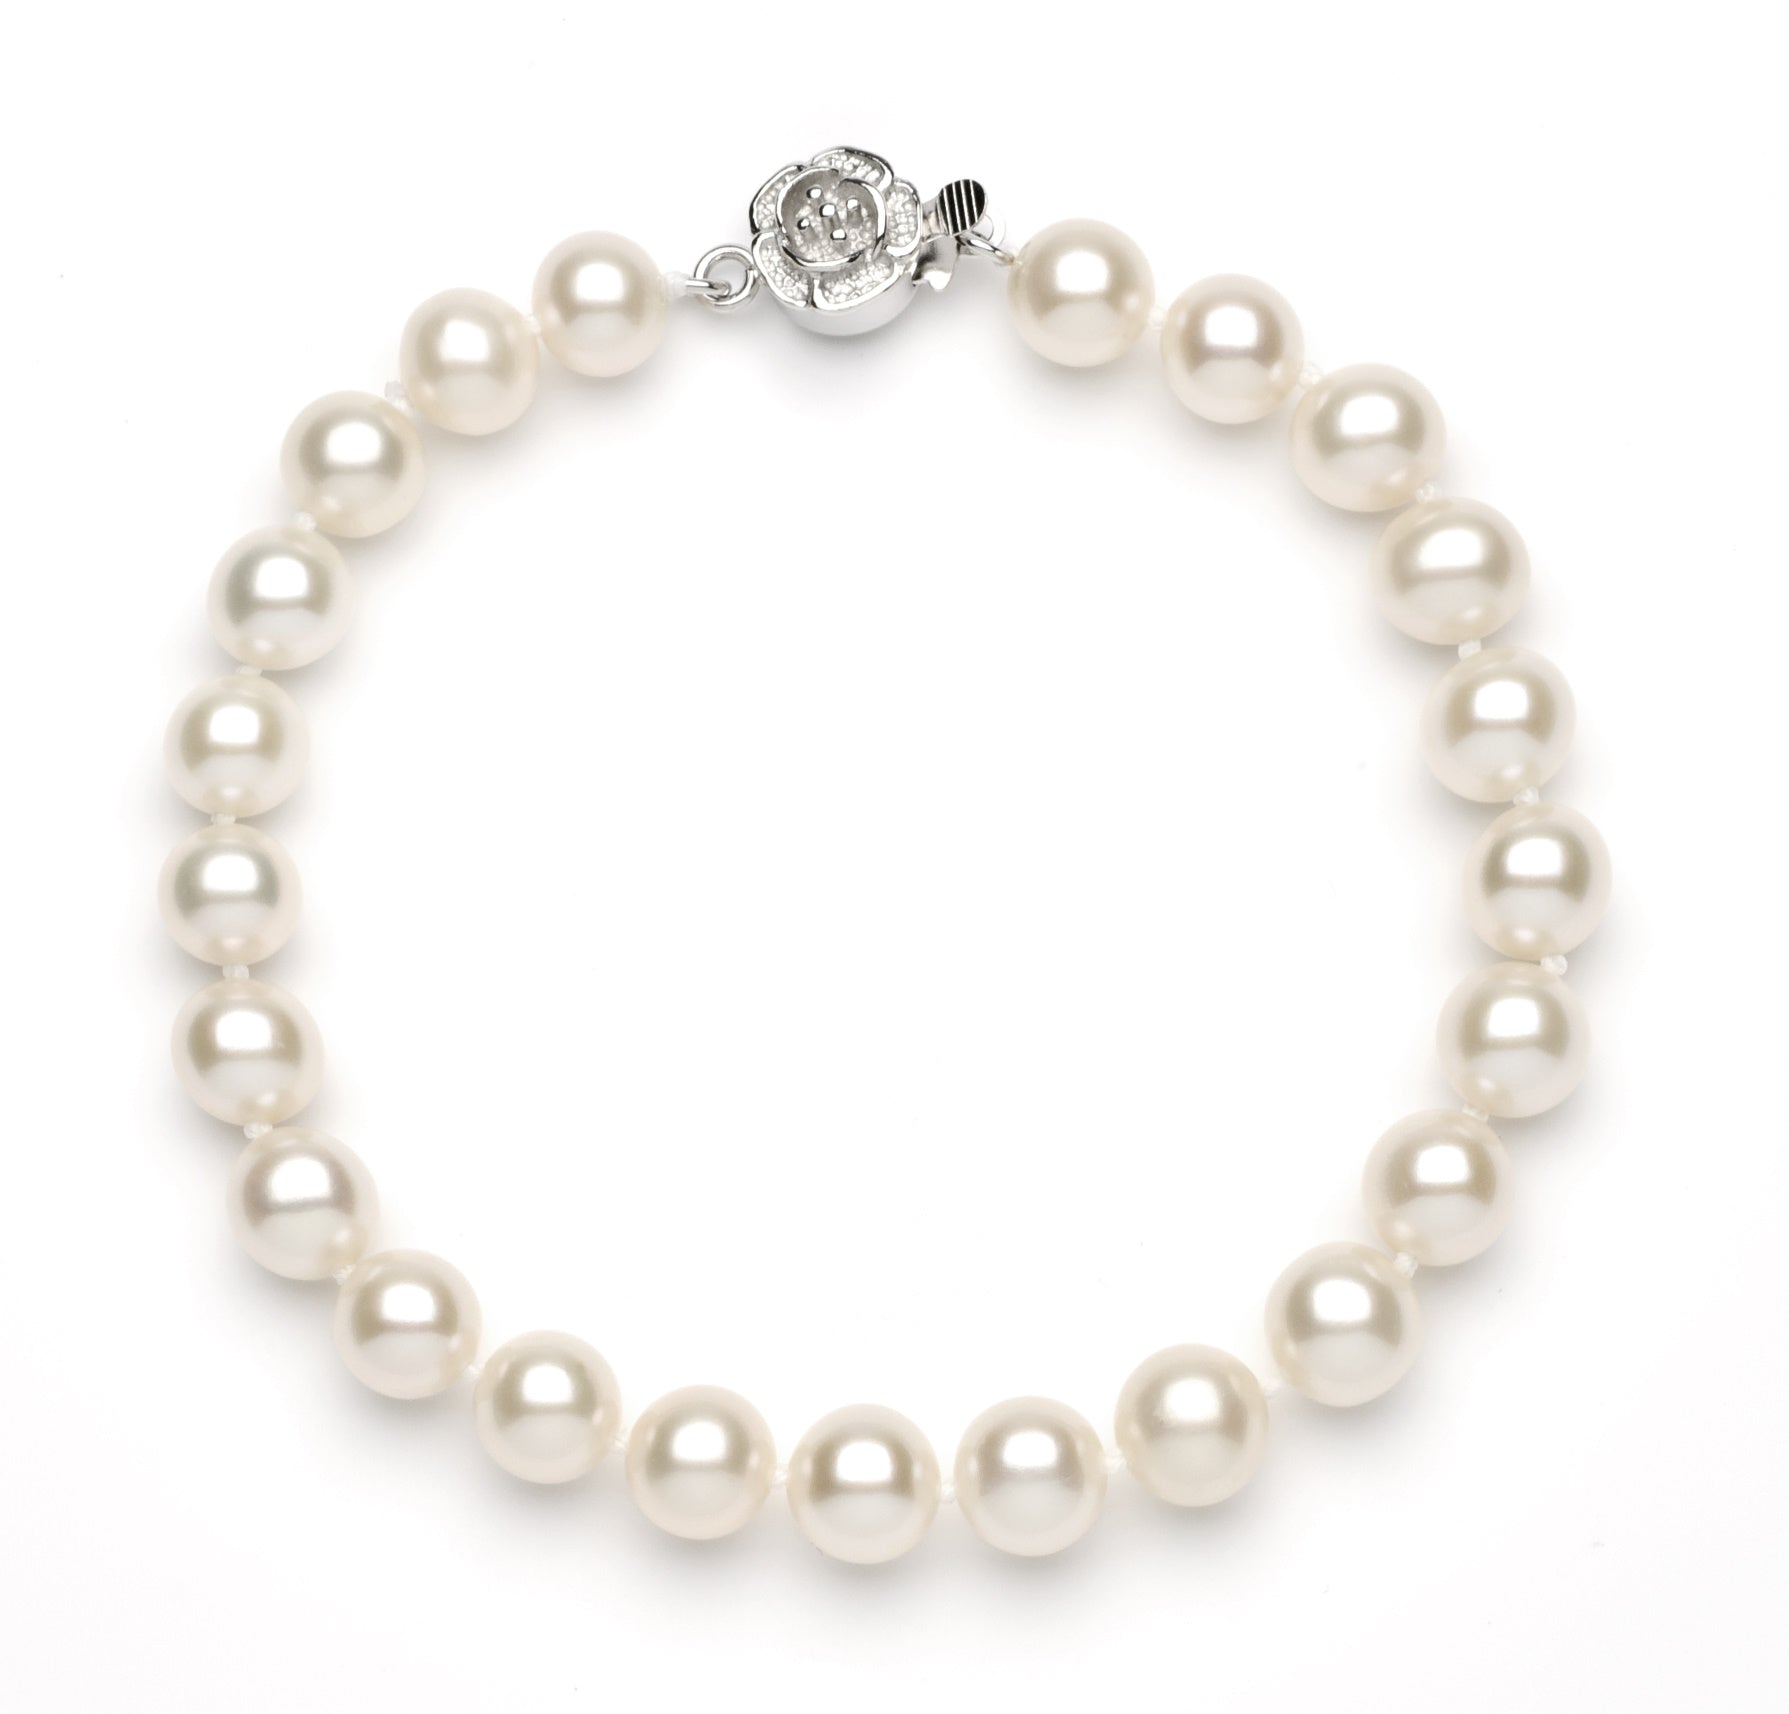 Full Set of 7.0-8.0 mm White Freshwater Pearls